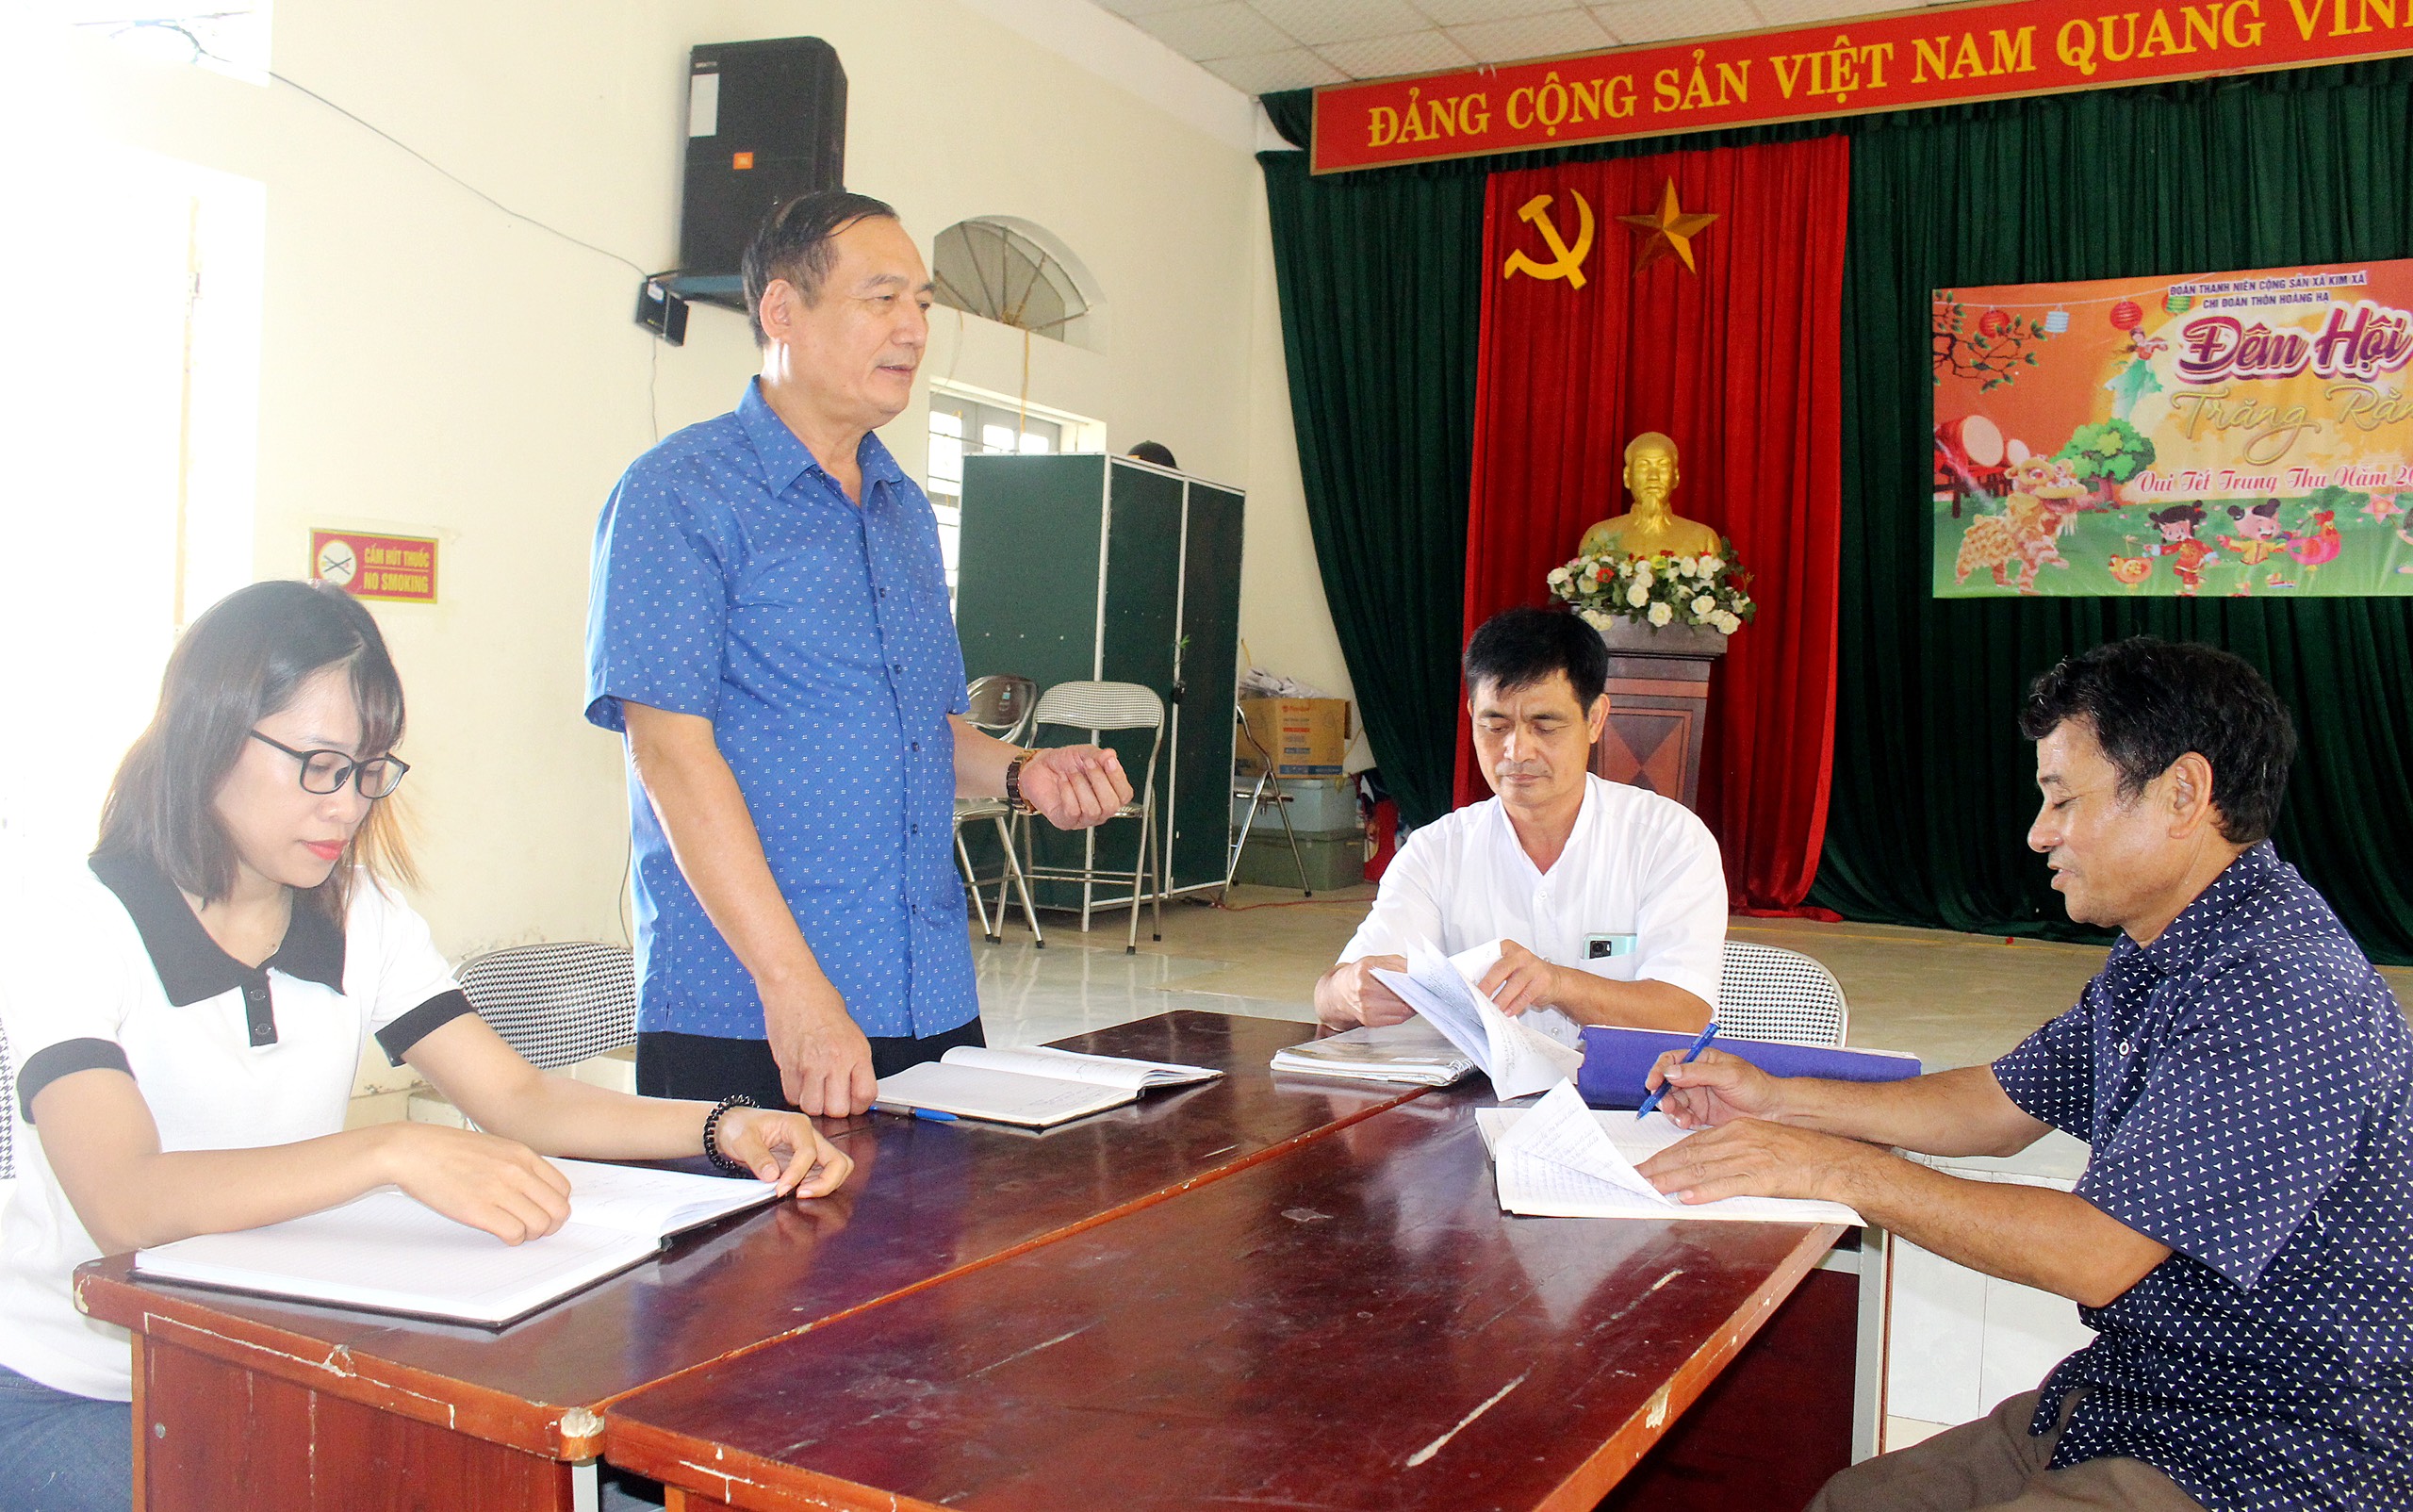 Đảng ủy xã Kim Xá, huyện Vĩnh Tường chú trọng nâng cao chất lượng sinh hoạt chi bộ. Ảnh: Trường Khanh.